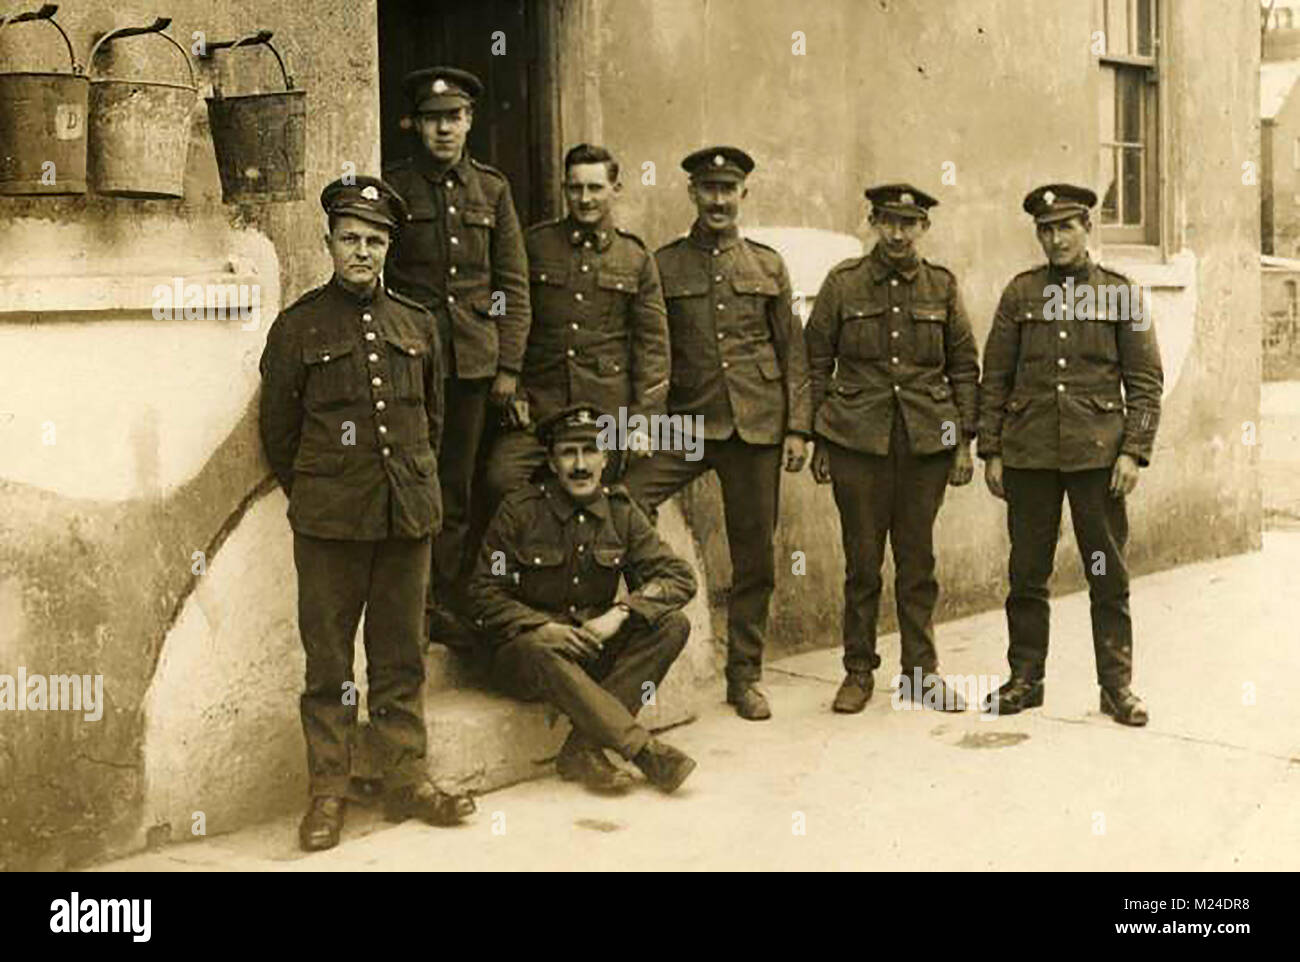 Erster Weltkrieg (1914-1918) aka Der Große Krieg oder Weltkrieg - Grabenkämpfe - WWI - eine Gruppe von 10 Royal Fusiliers - Britische Armee Stockfoto